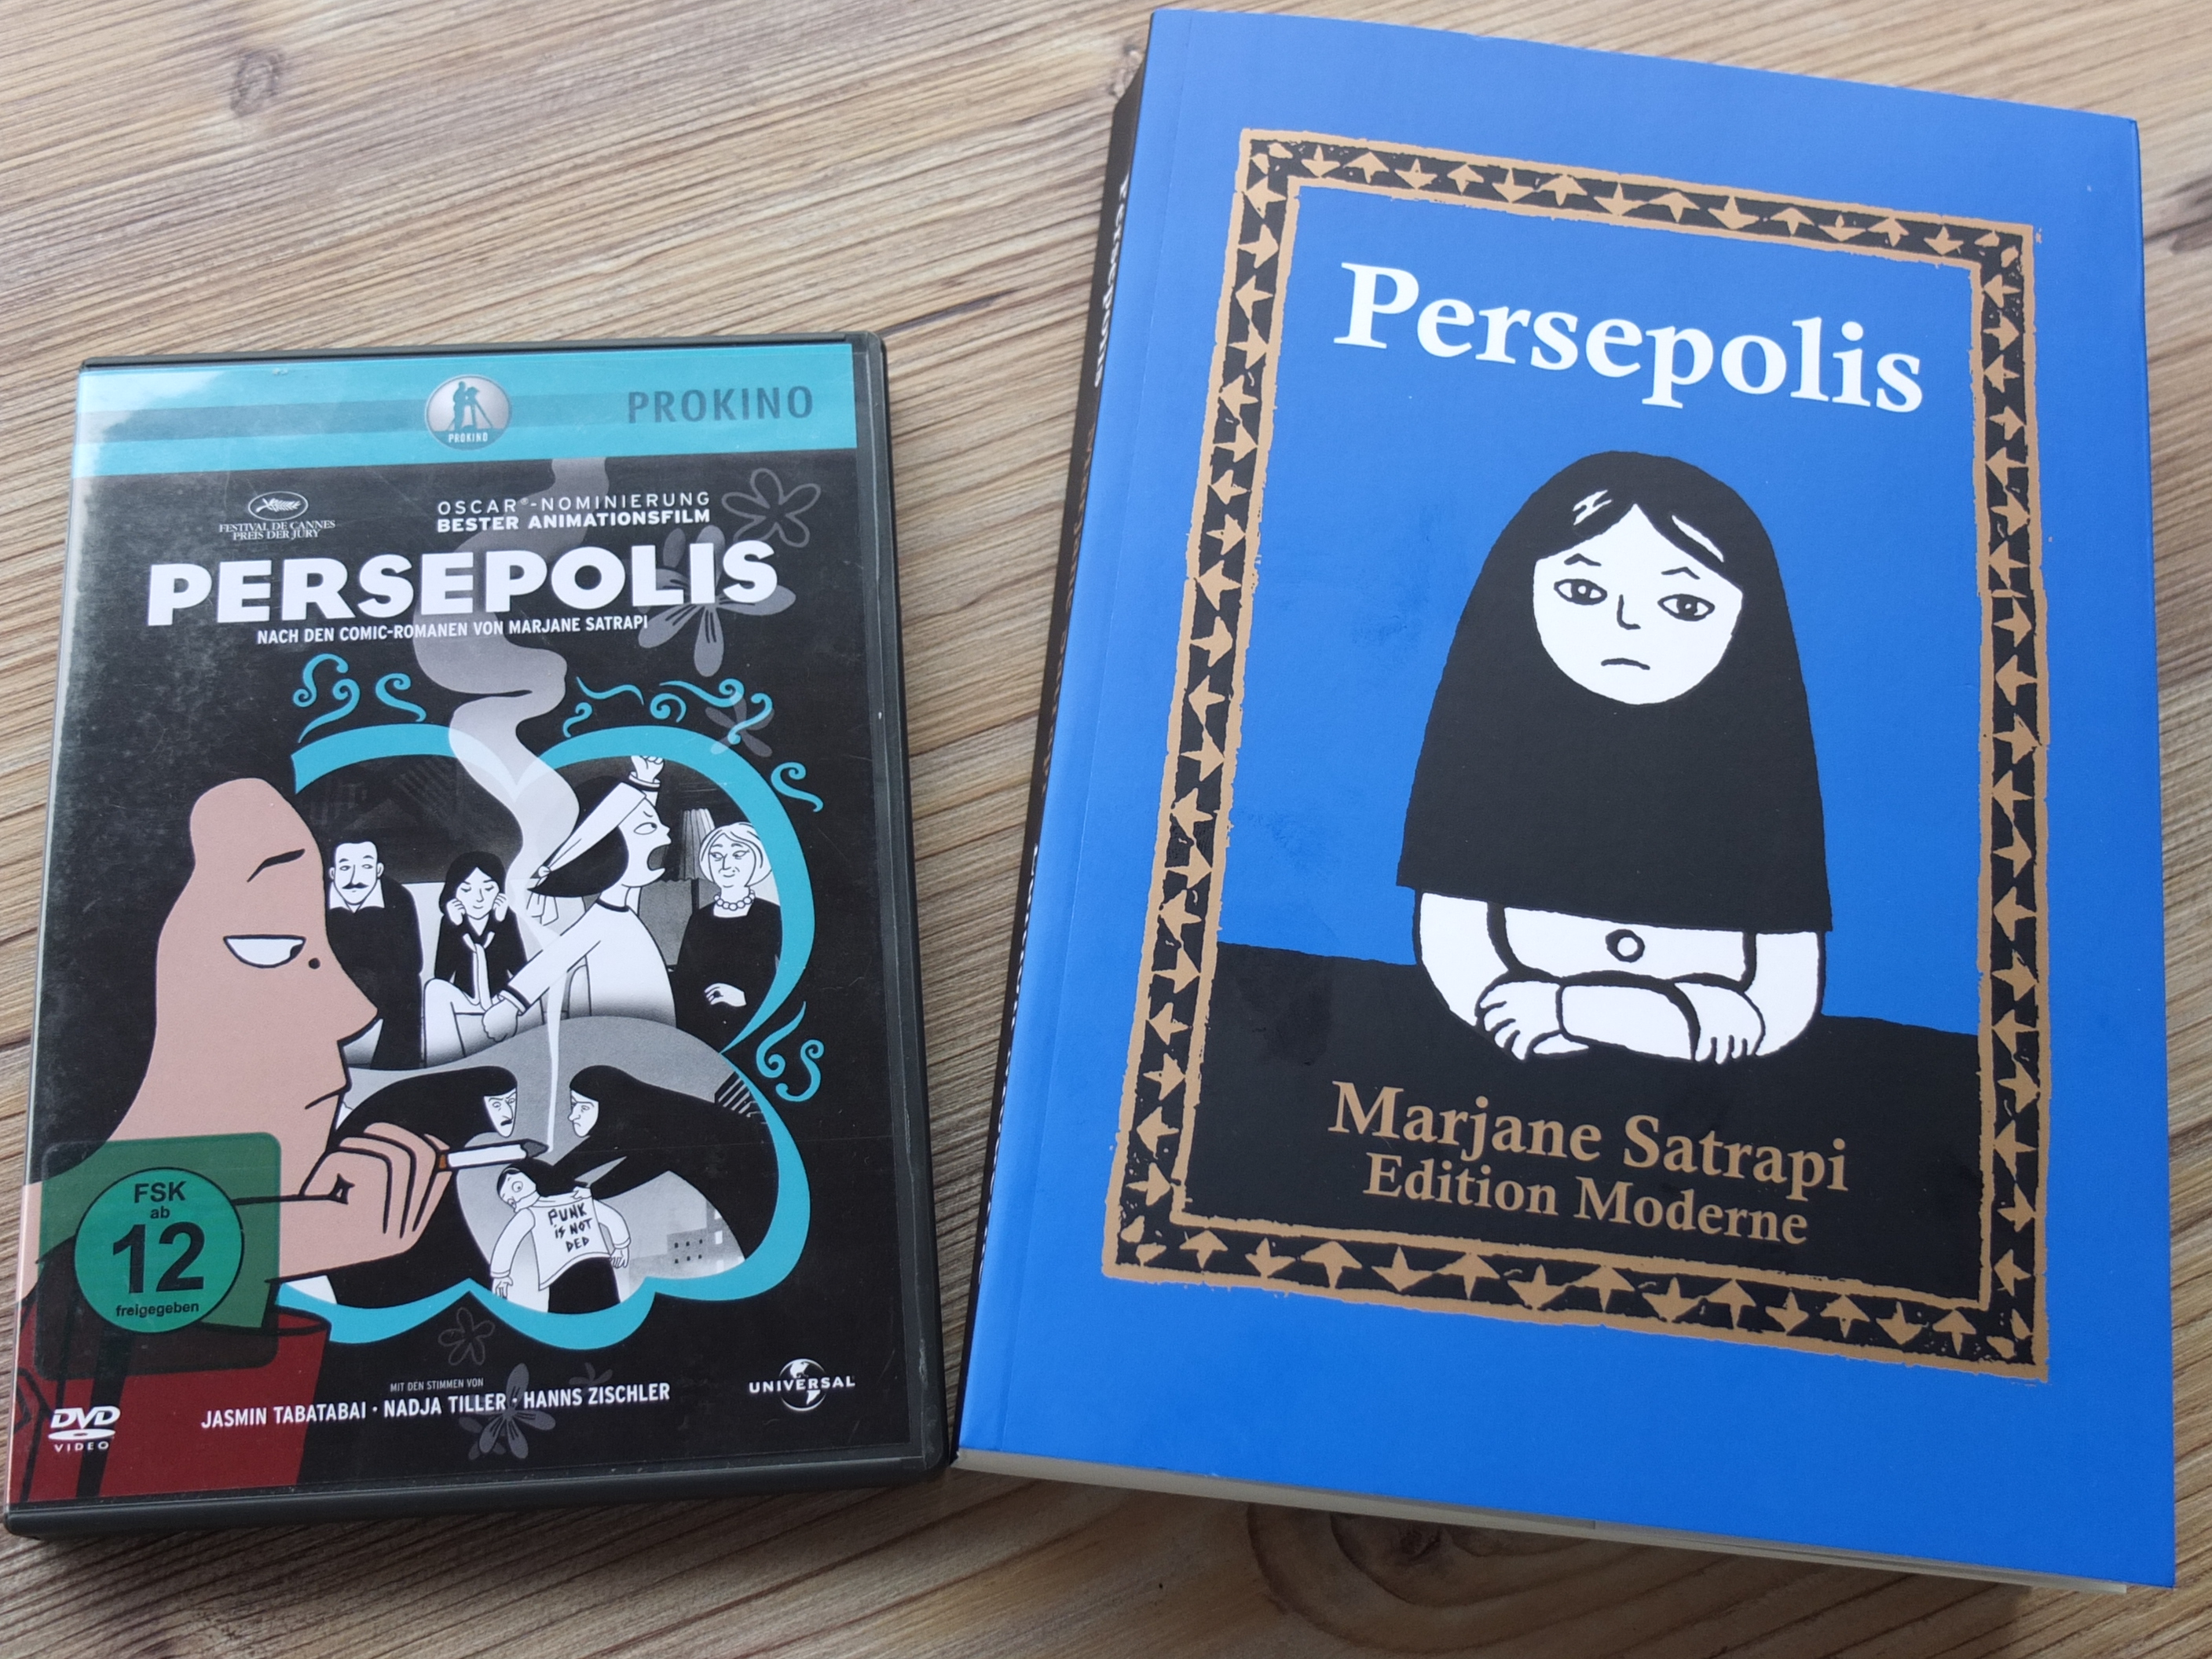 Buch und Film "Persepolis" - auf der Suche nach Freiheit